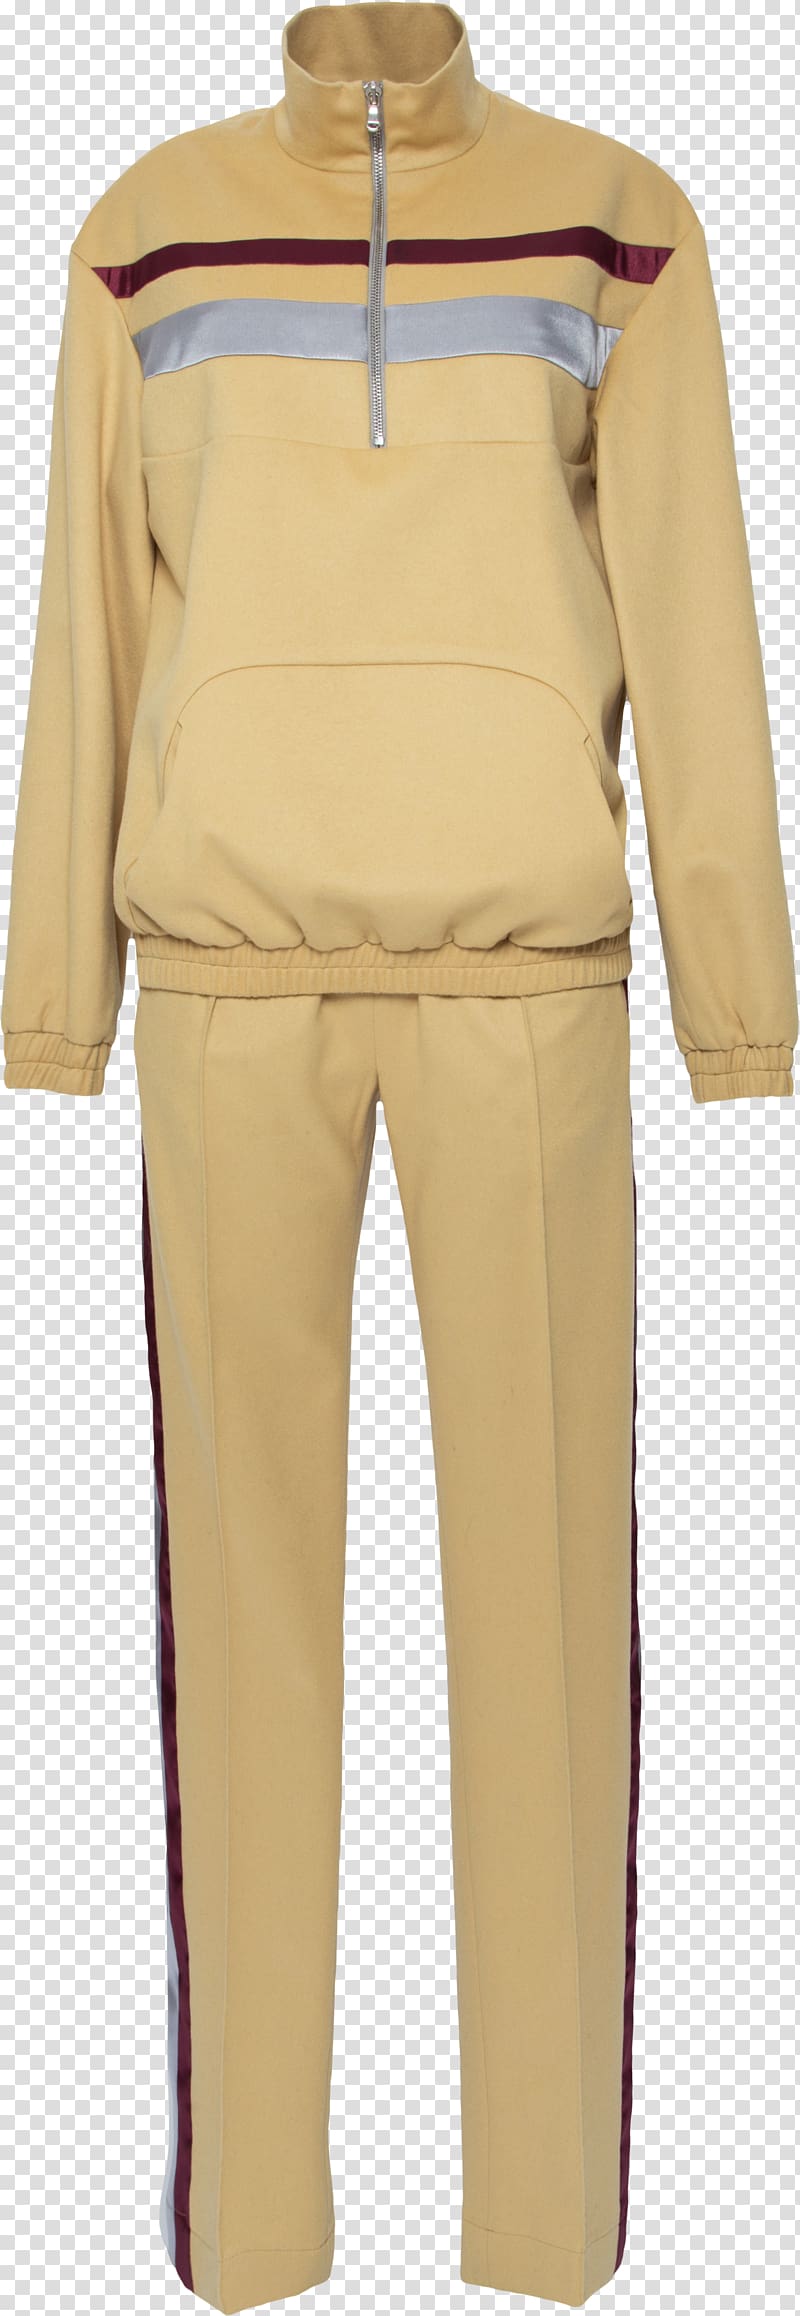 Pants Khaki, track suit transparent background PNG clipart